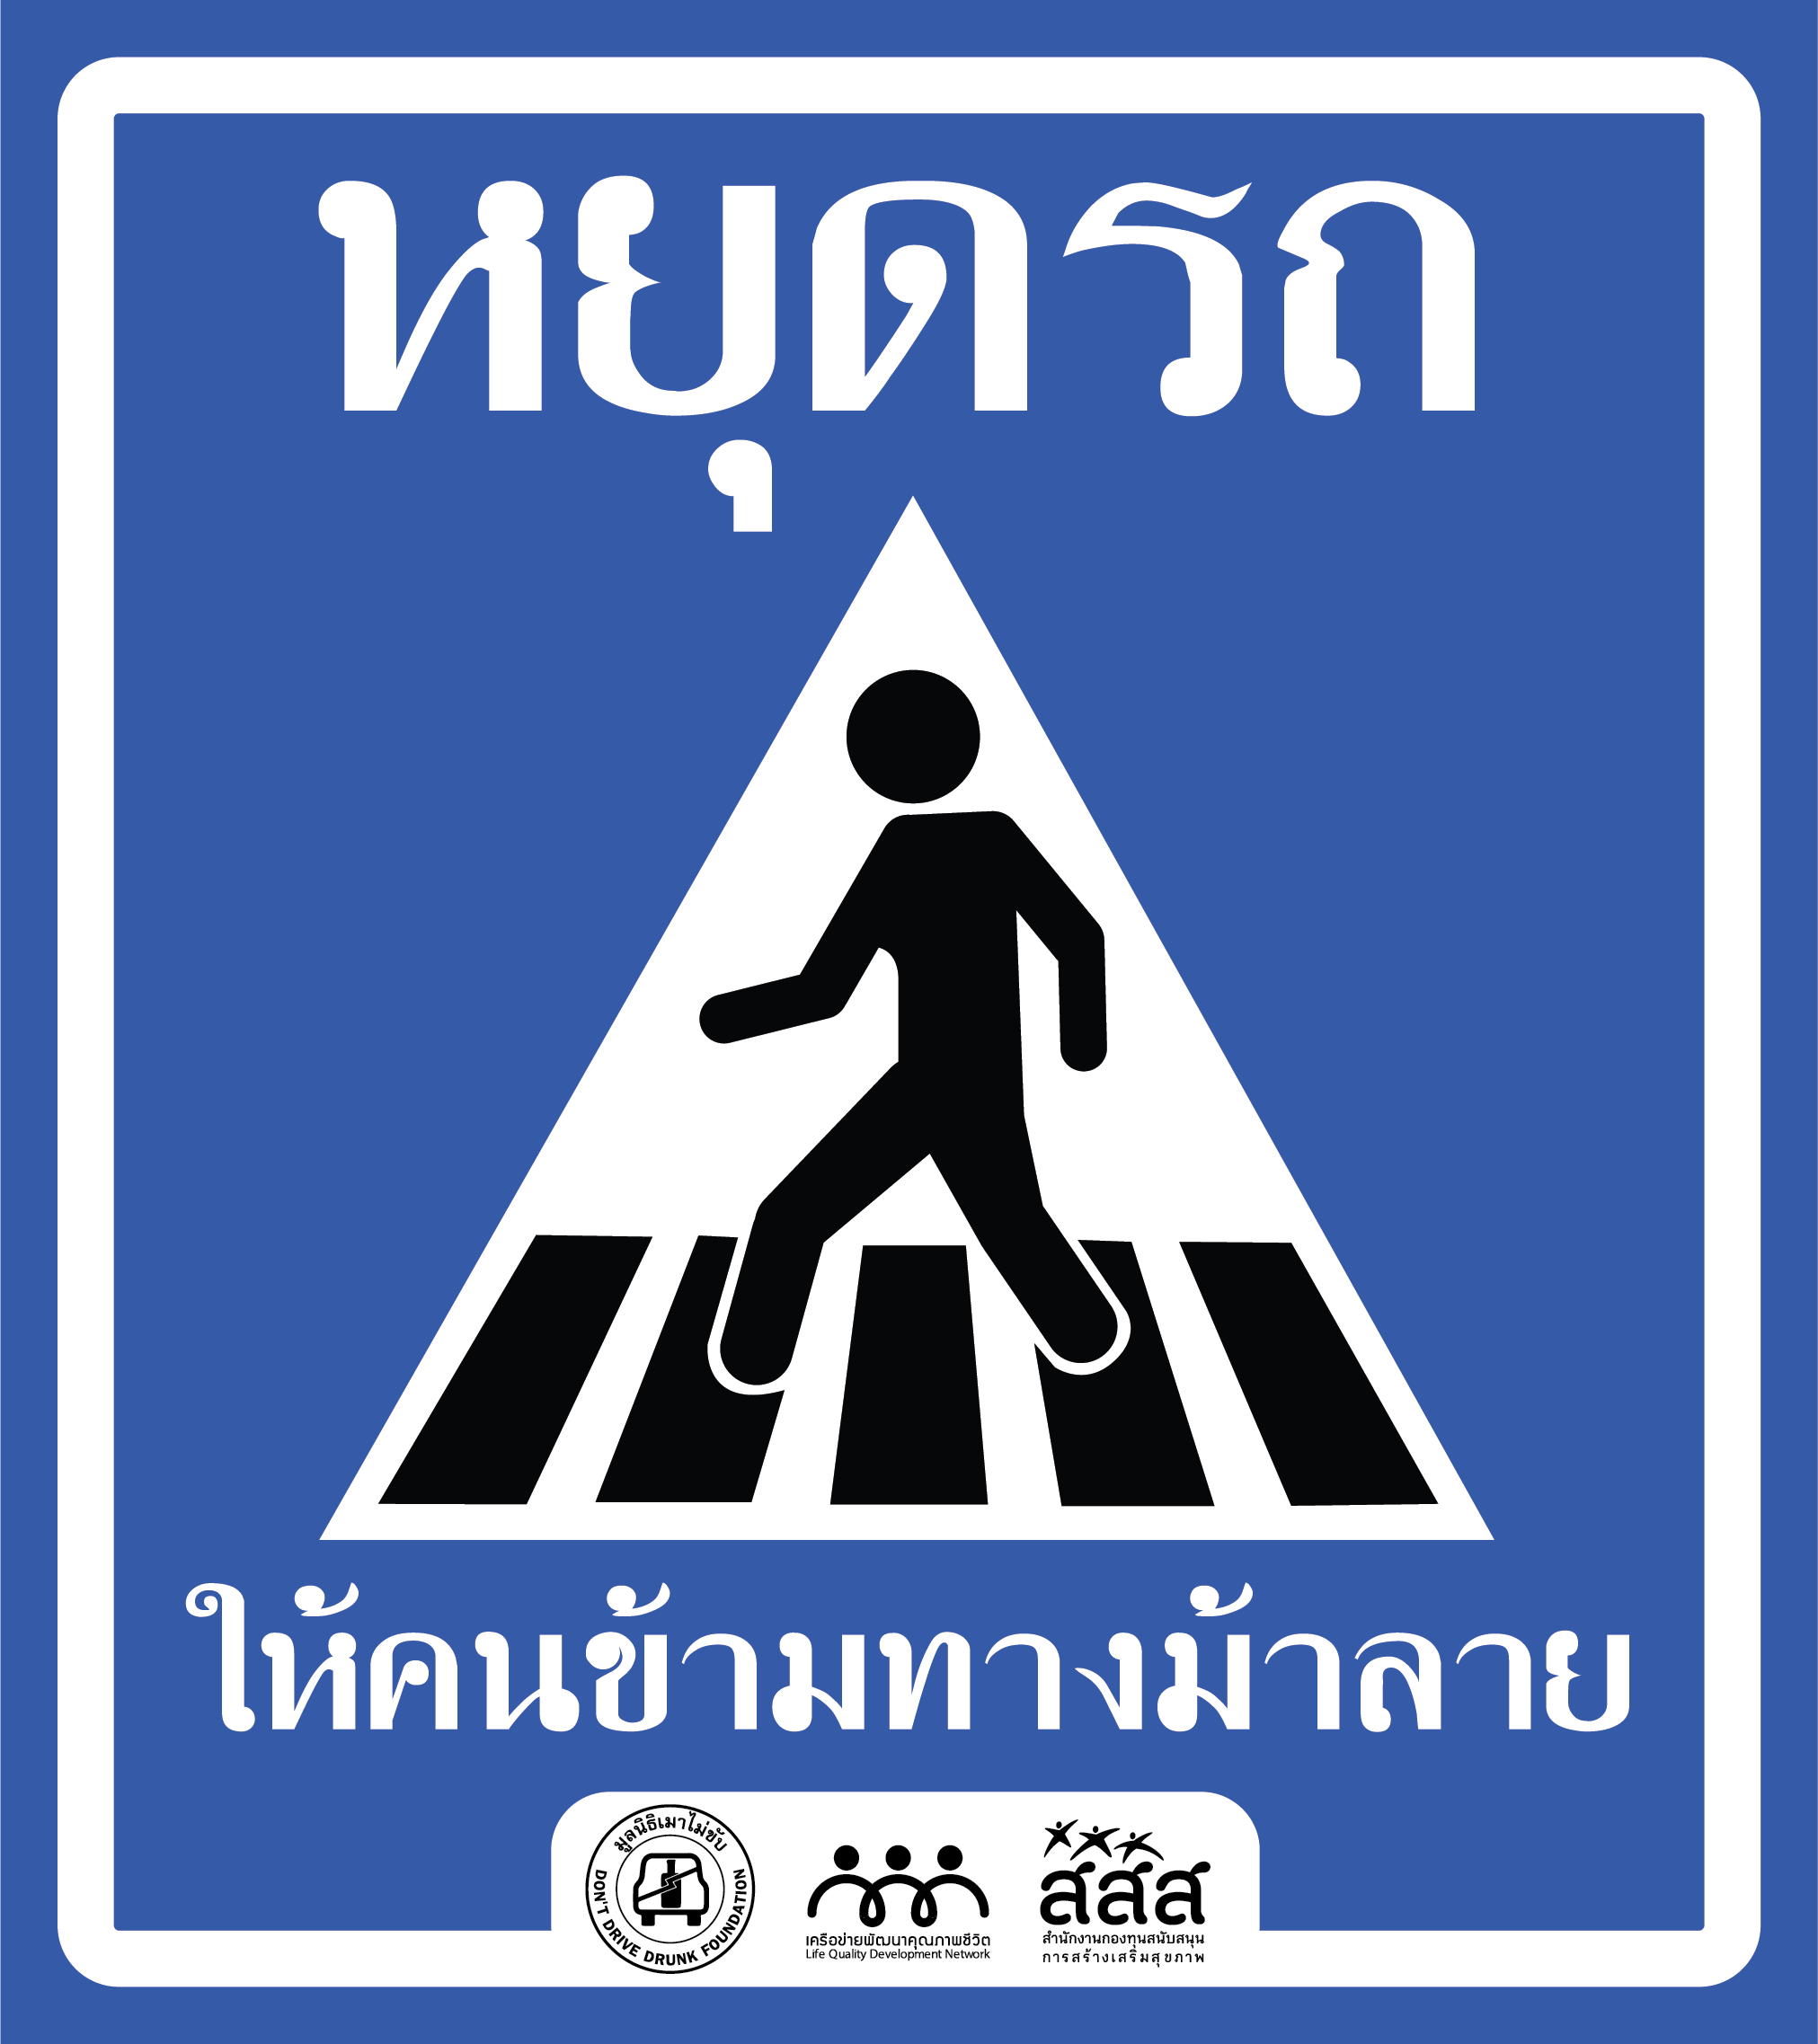 เปิดผลสำรวจพฤติกรรมหยุดรถทางม้าลายในกรุงเทพฯ  แนะสร้างระบบความปลอดภัยควบคู่การบังคับใช้กฎหมาย thaihealth